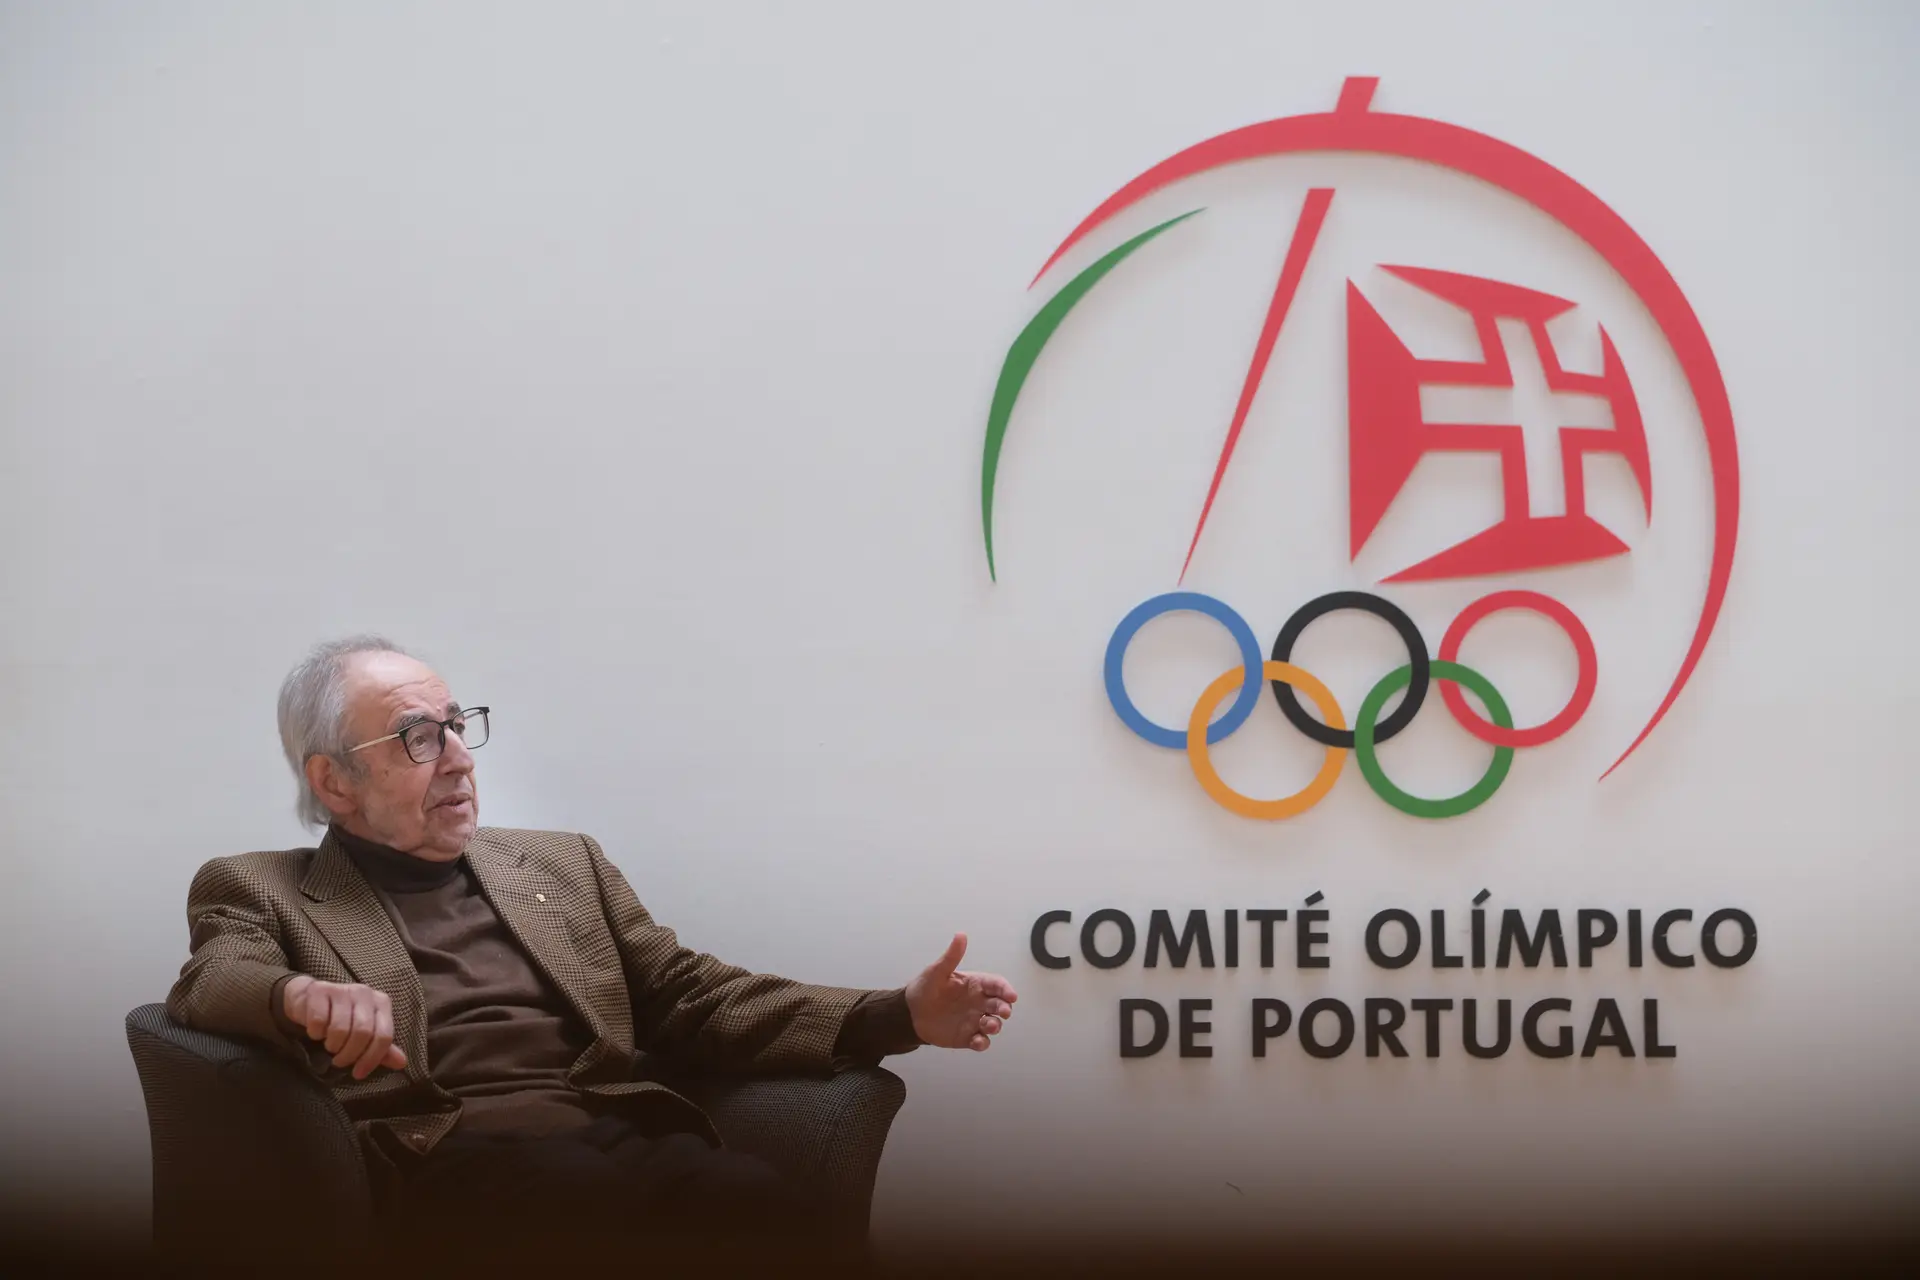 O presidente do Comité Olímpico de Portugal (COP), José Manuel Constantino, fala durante uma entrevista à agência Lusa na sede do COP, em Lisboa.